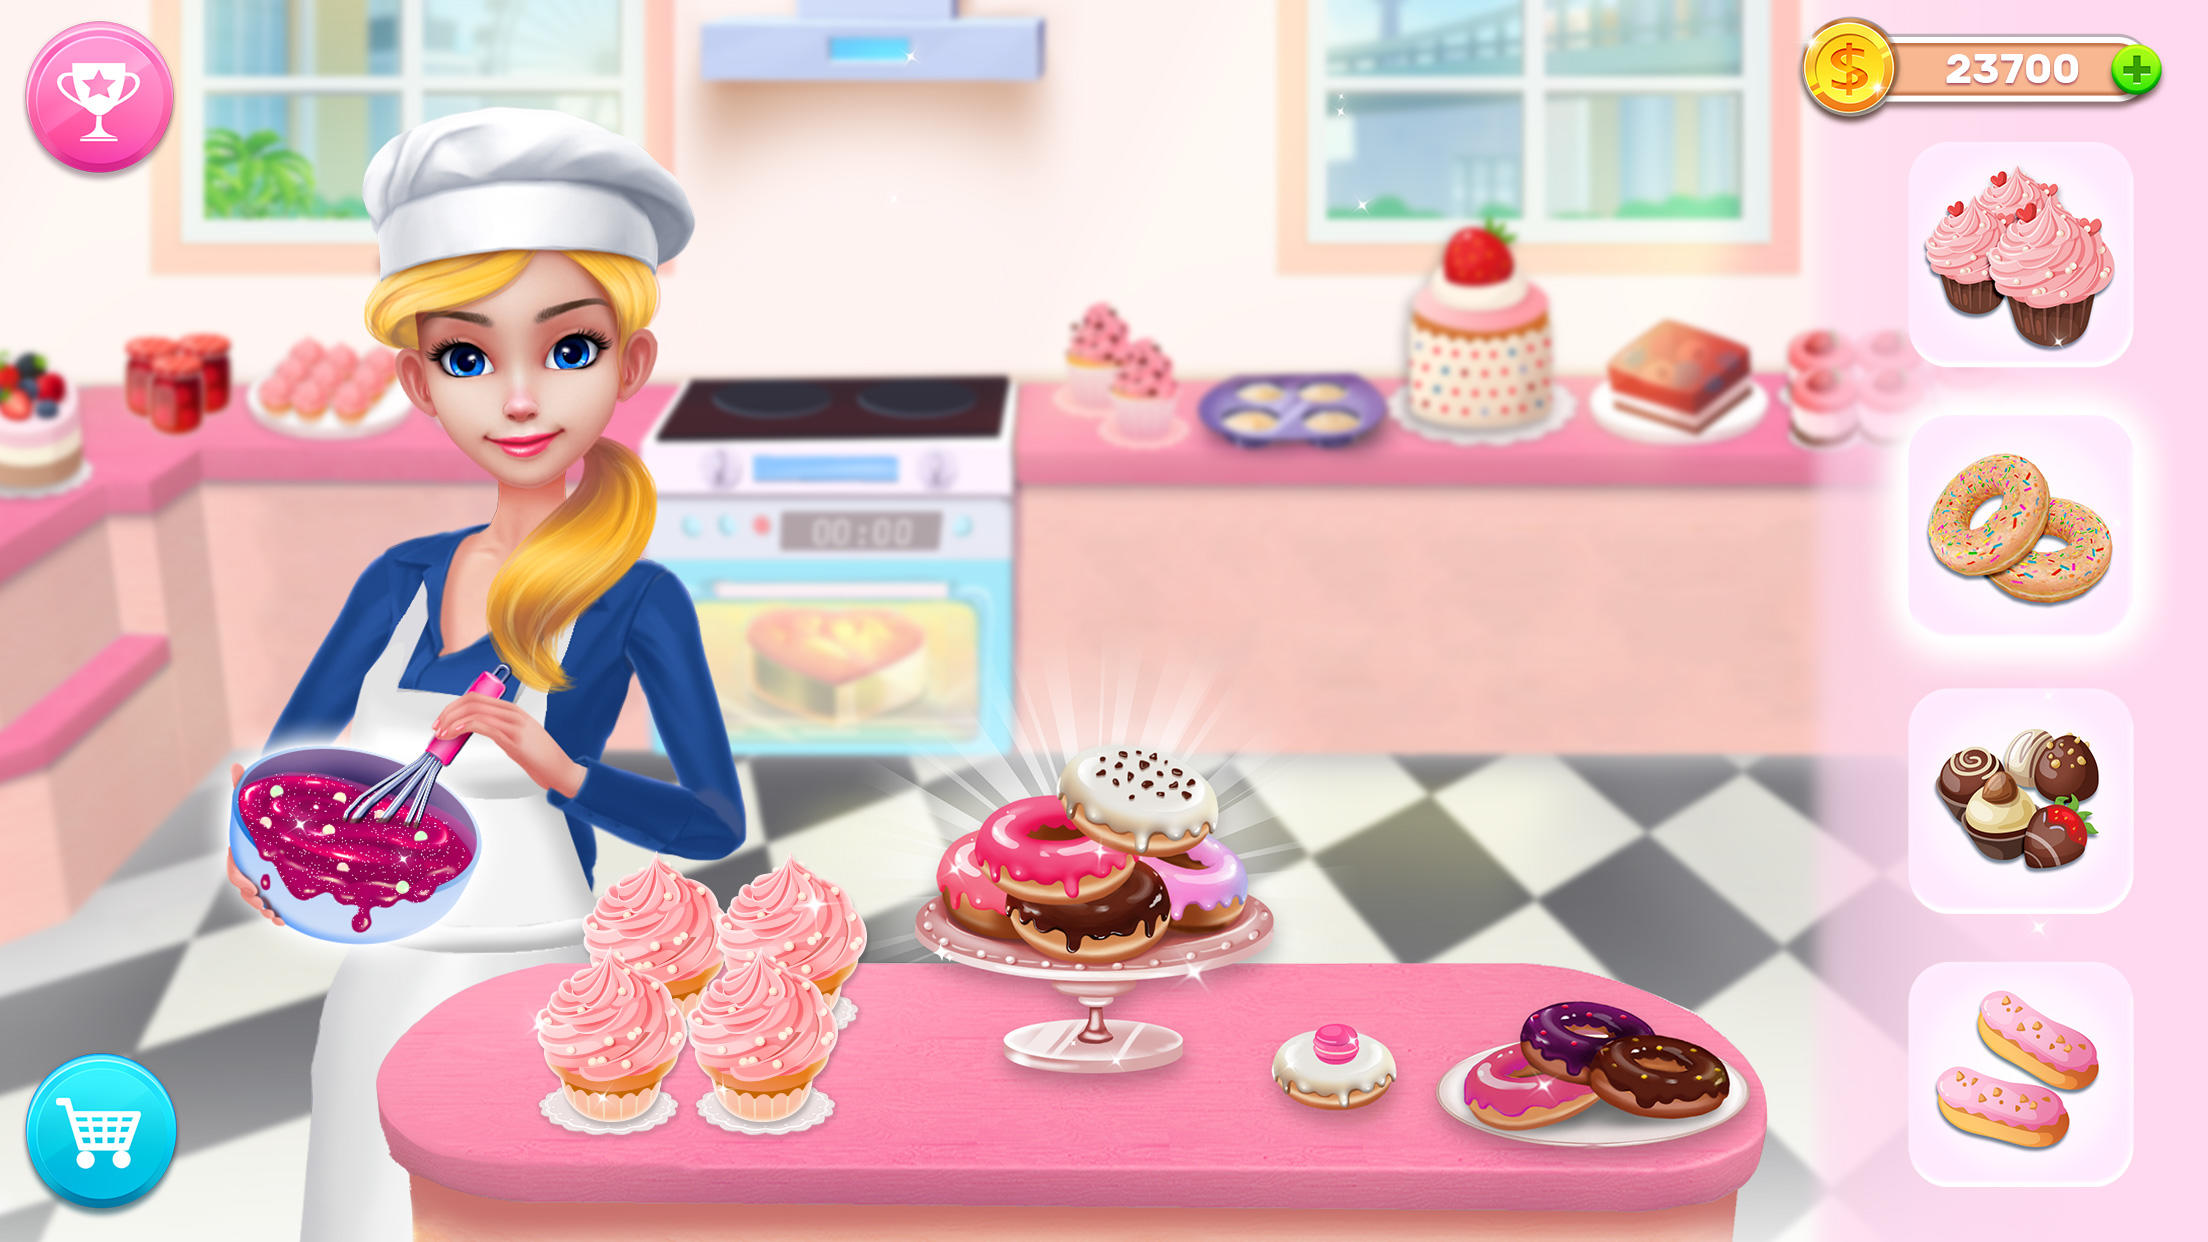 Screenshot 1 of អាណាចក្រ Bakery របស់ខ្ញុំ៖ ដុតនំនំខេក 1.6.0